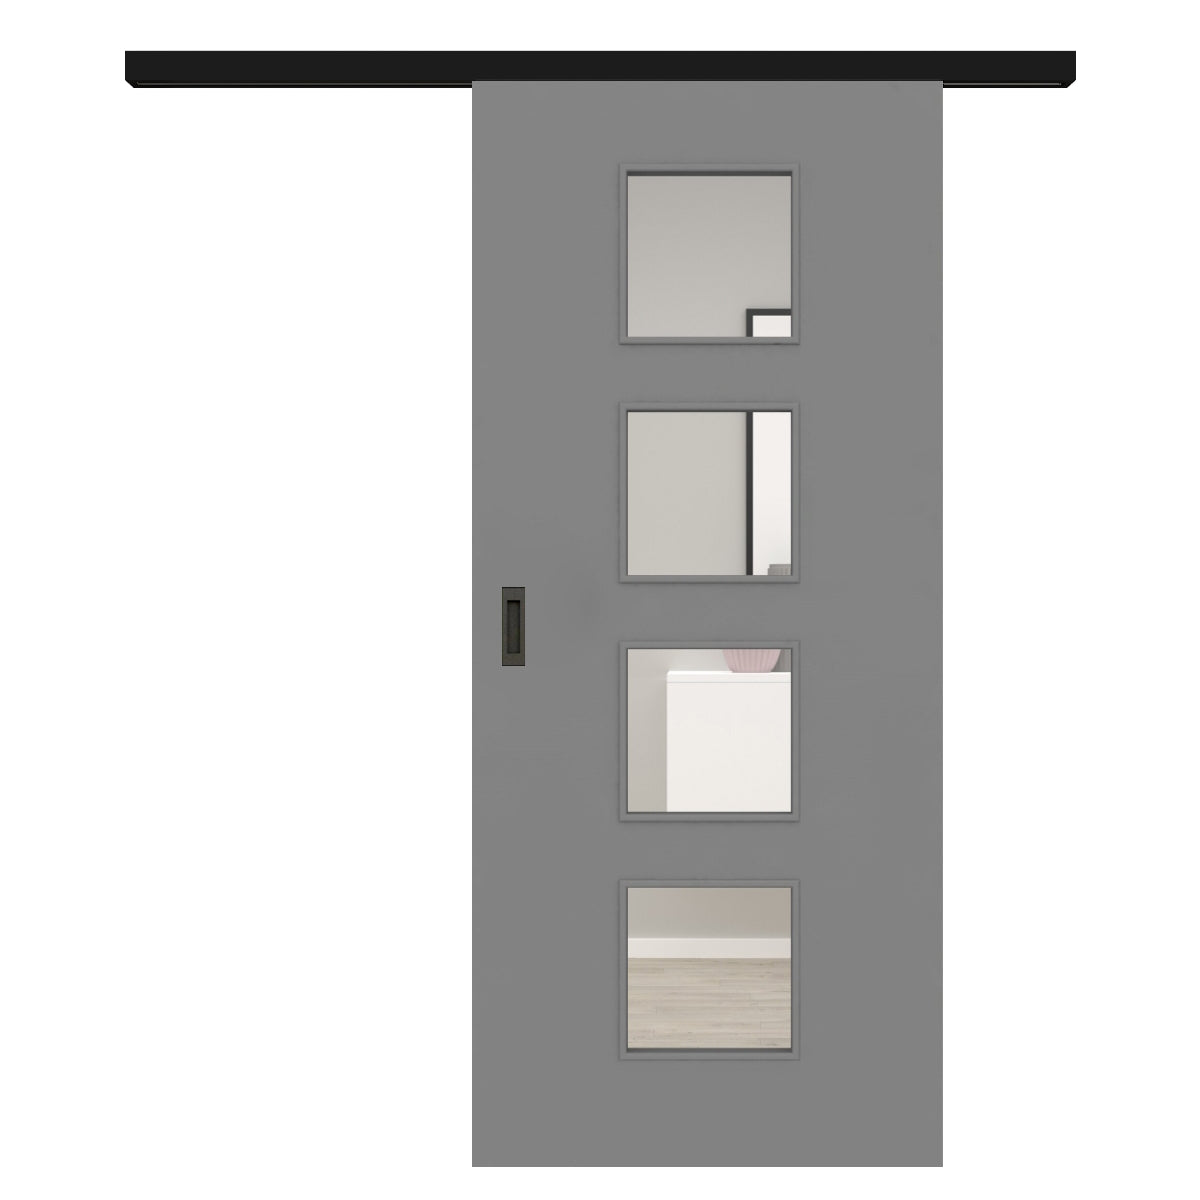 Schiebetür für Set mit schwarzem Laufkasten mit Lichtausschnitt grau glatt - Modell LA4